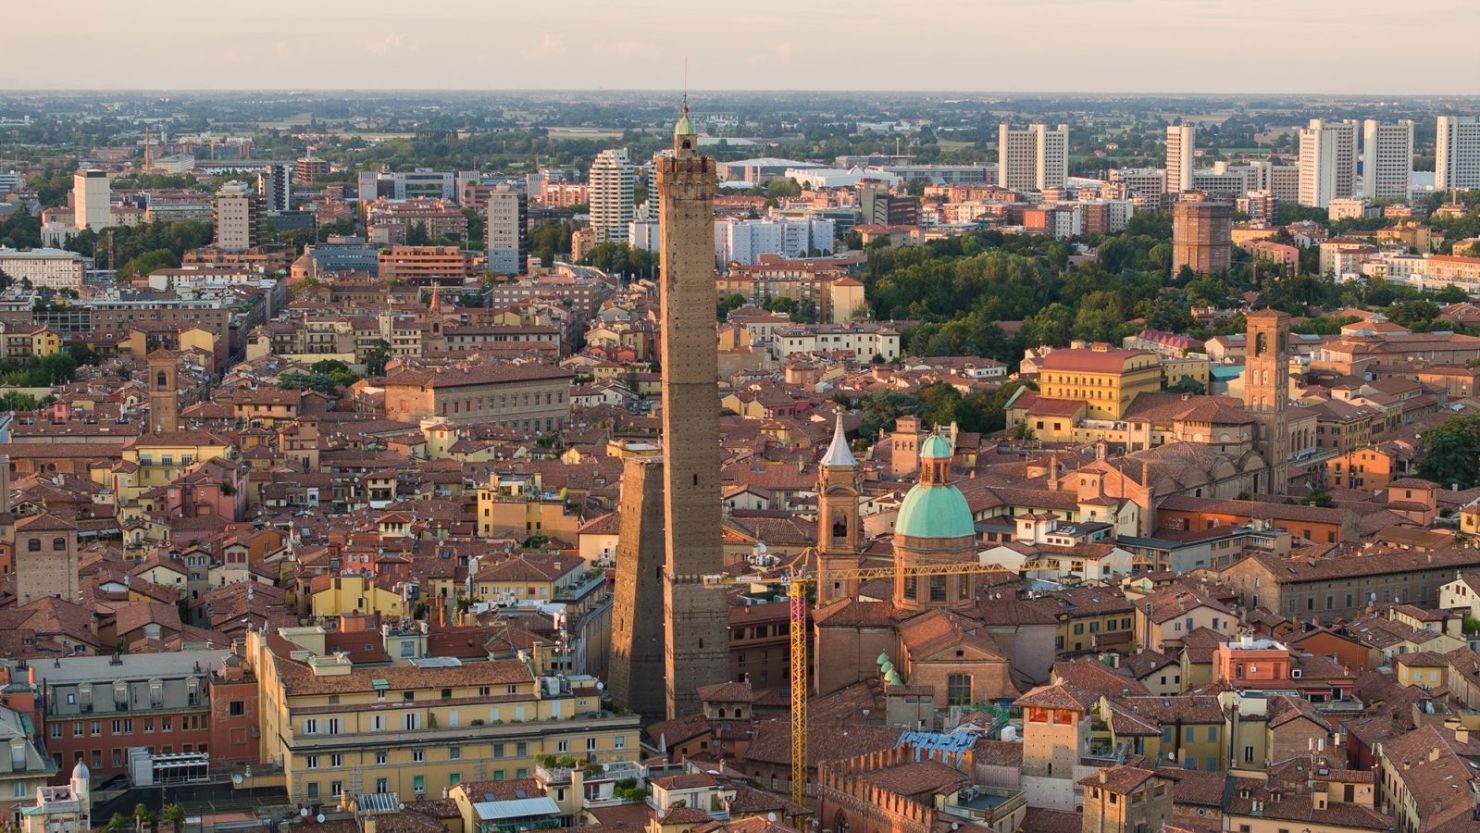 Las "torres gemelas" de Bolonia dominan el horizonte de la ciudad.